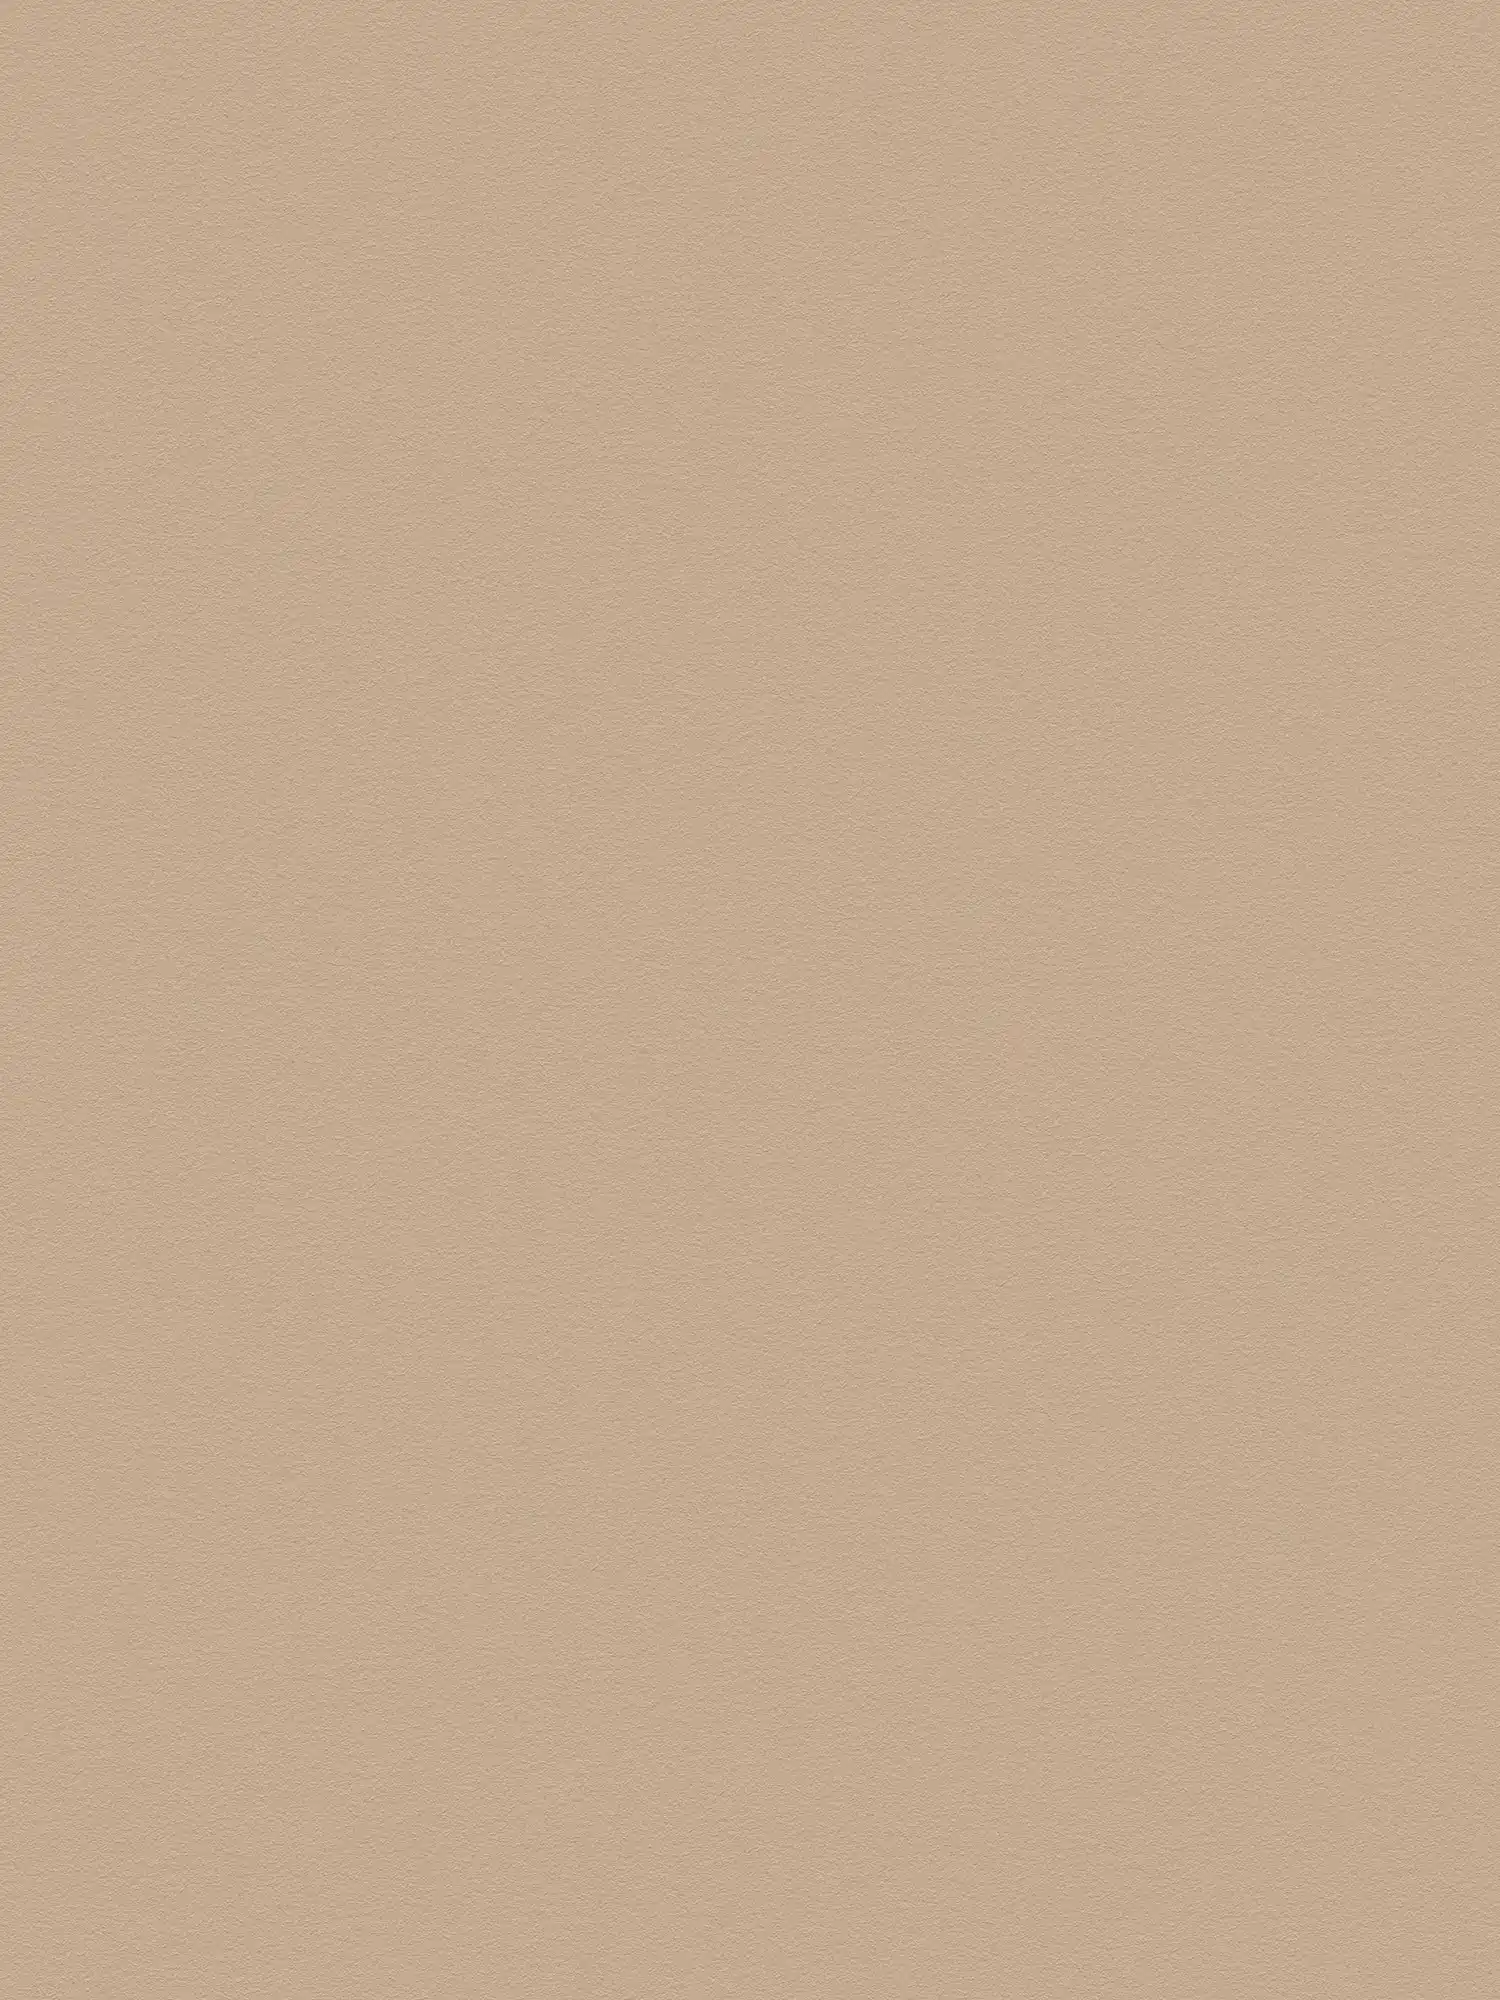 Carta da parati liscia marrone chiaro con superficie liscia - beige, marrone
